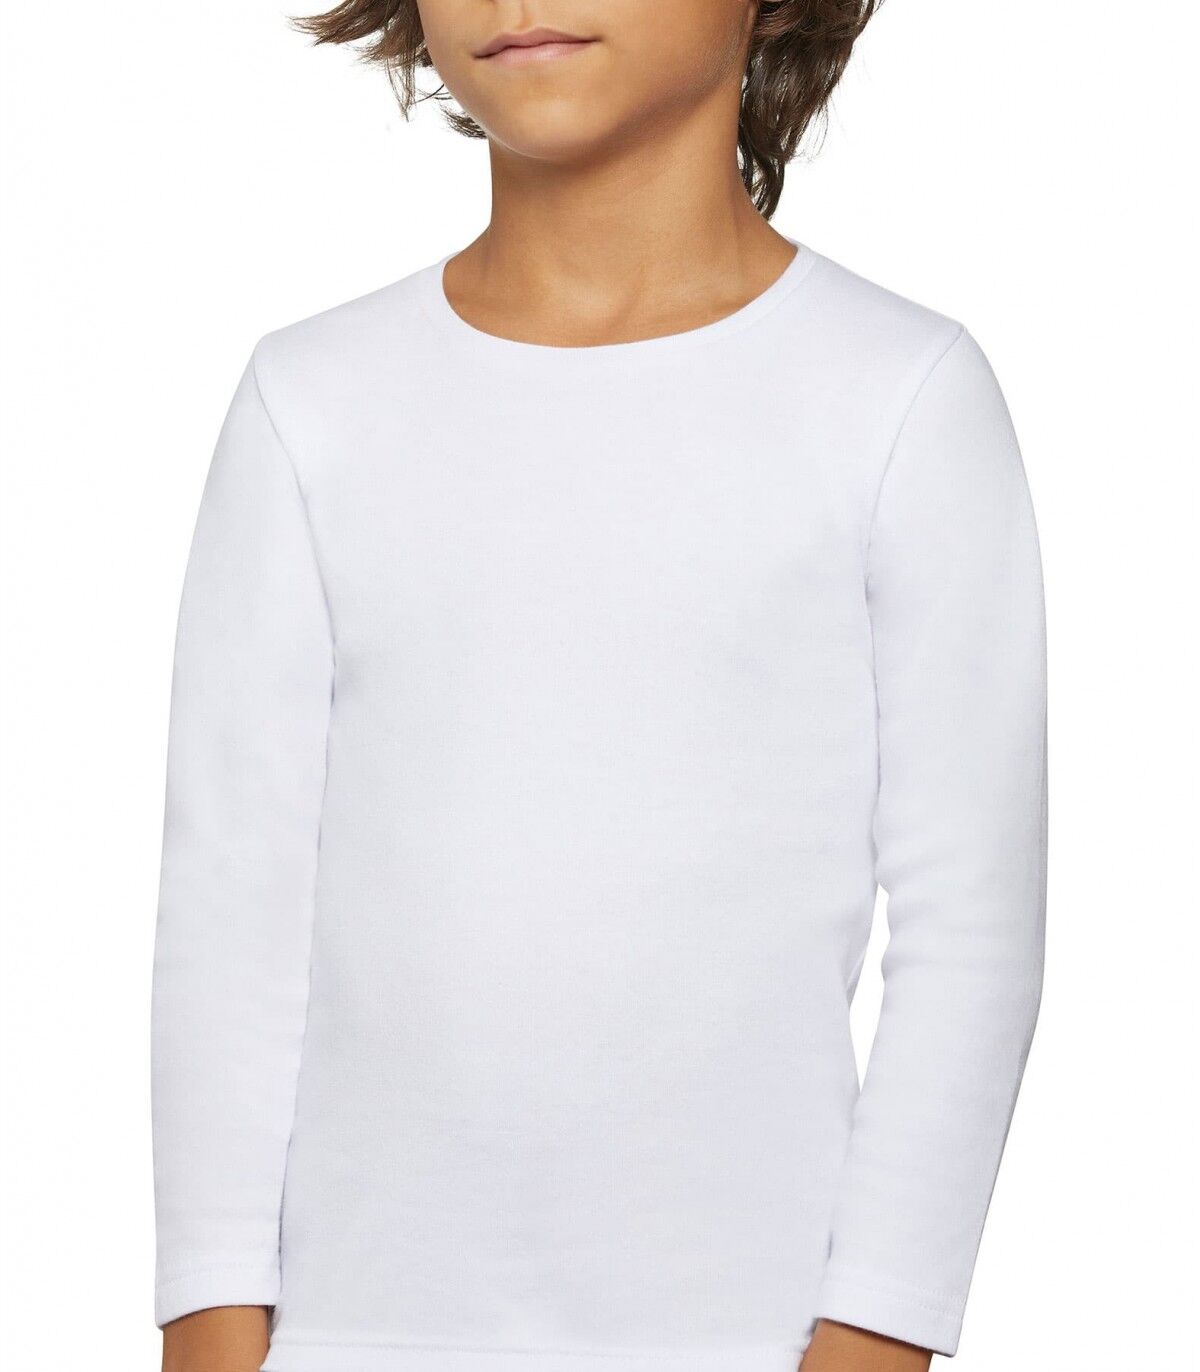 Camiseta infantil Térmica Ysabel Mora 18301 10 Blanco